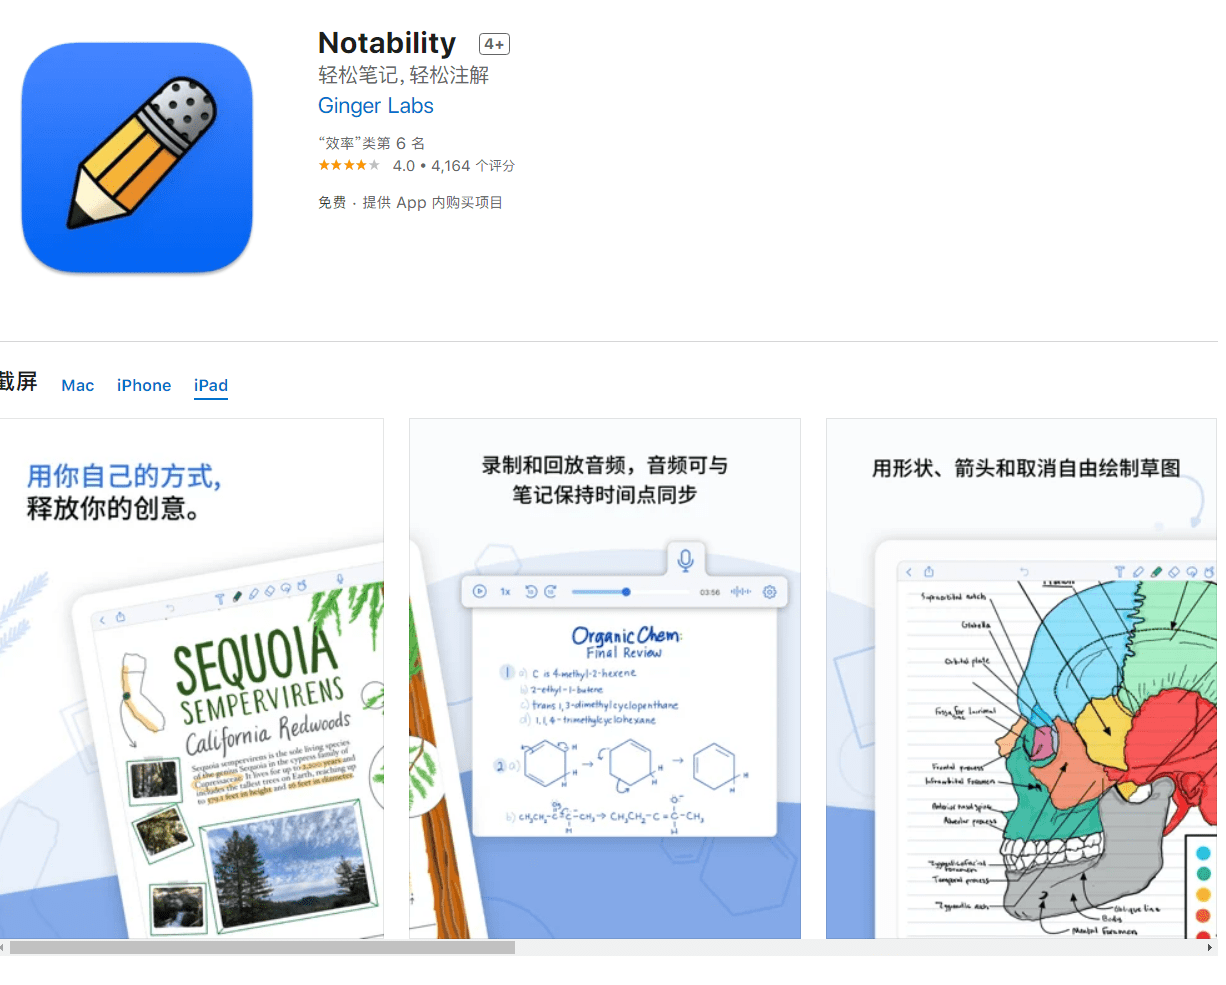 功能|iOS 笔记应用 Notability 11.0.2 终身买断版本已更新